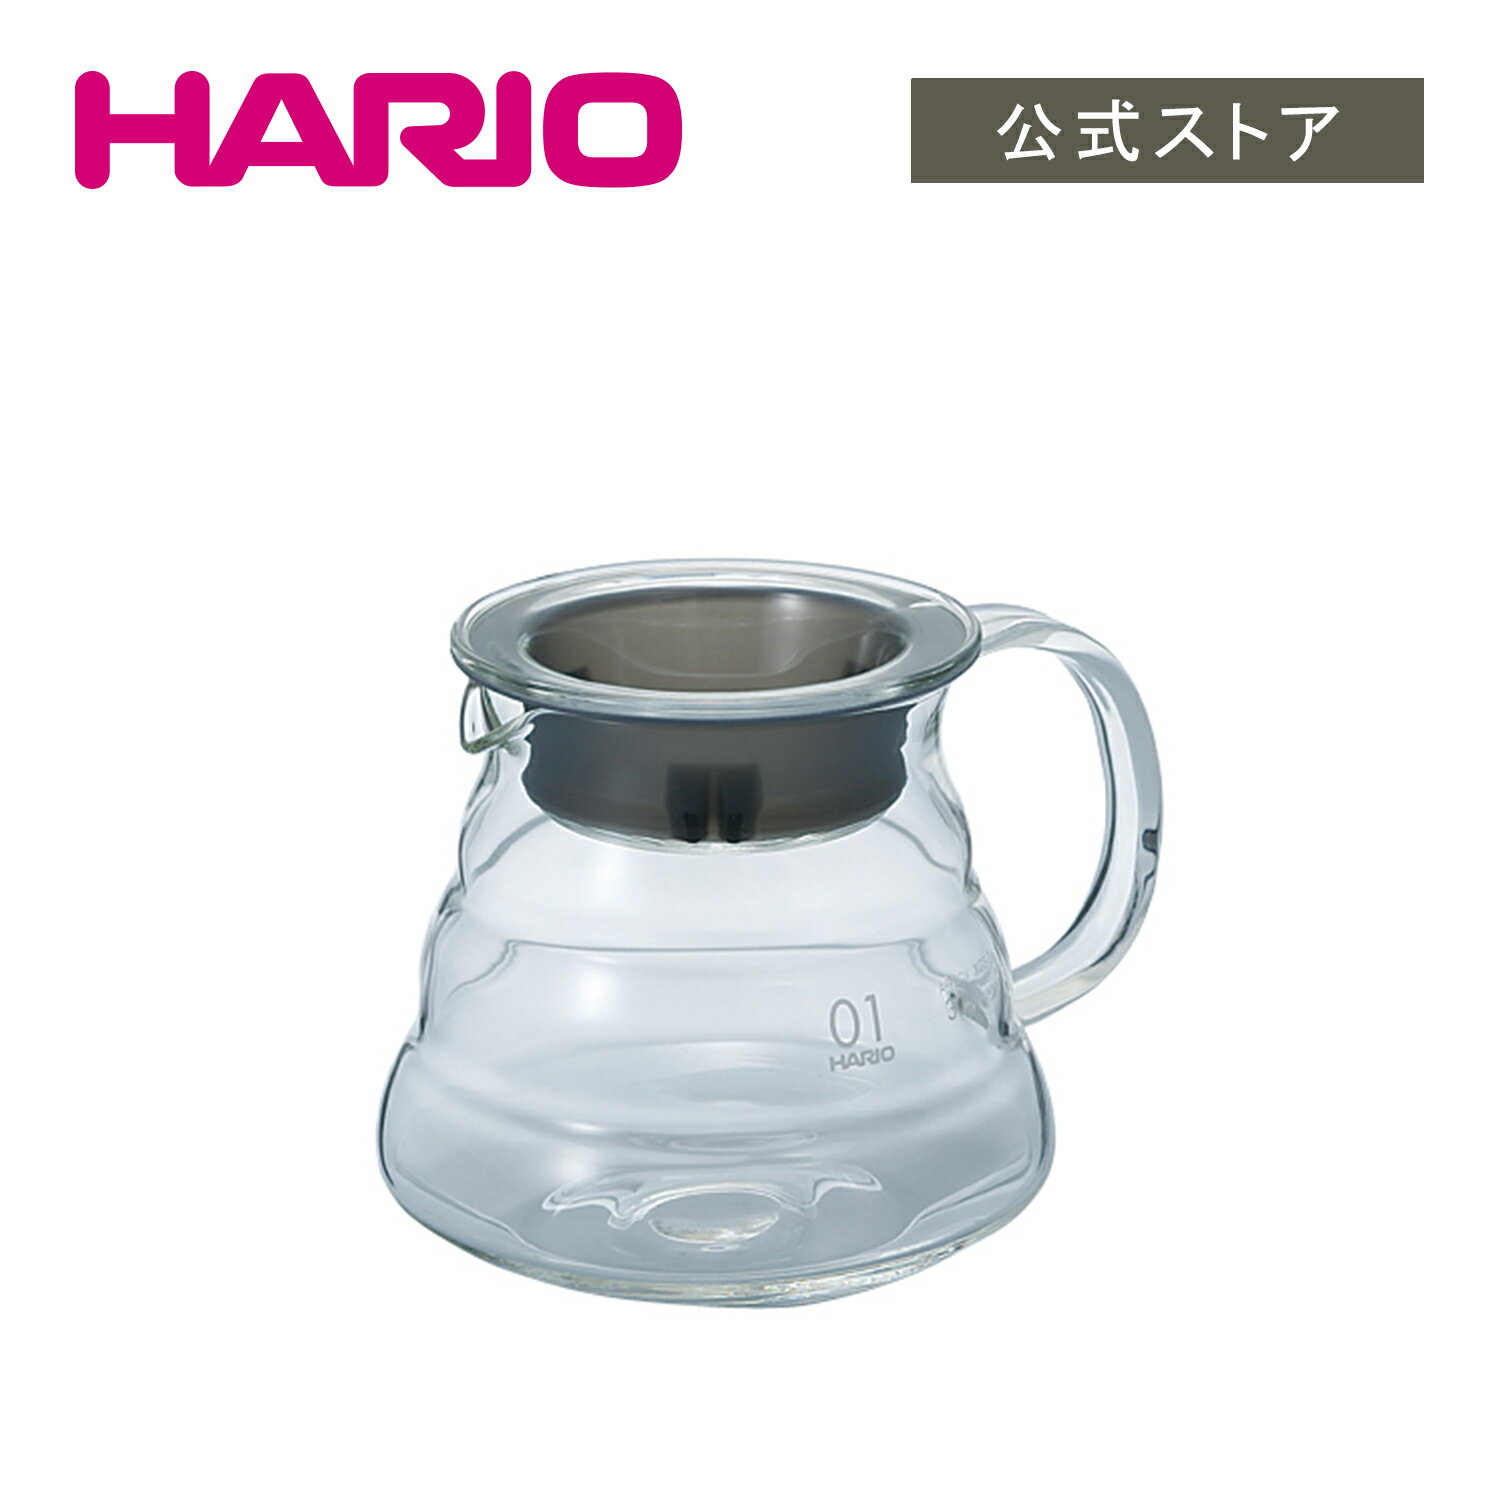 【公式ショップ】HARIO V60グラスサーバー360 クリア　HARIO ハリオ サーバー コーヒーサーバー 電子レンジ可 01サイズ 360ml 食洗機対応 おしゃれ 透明